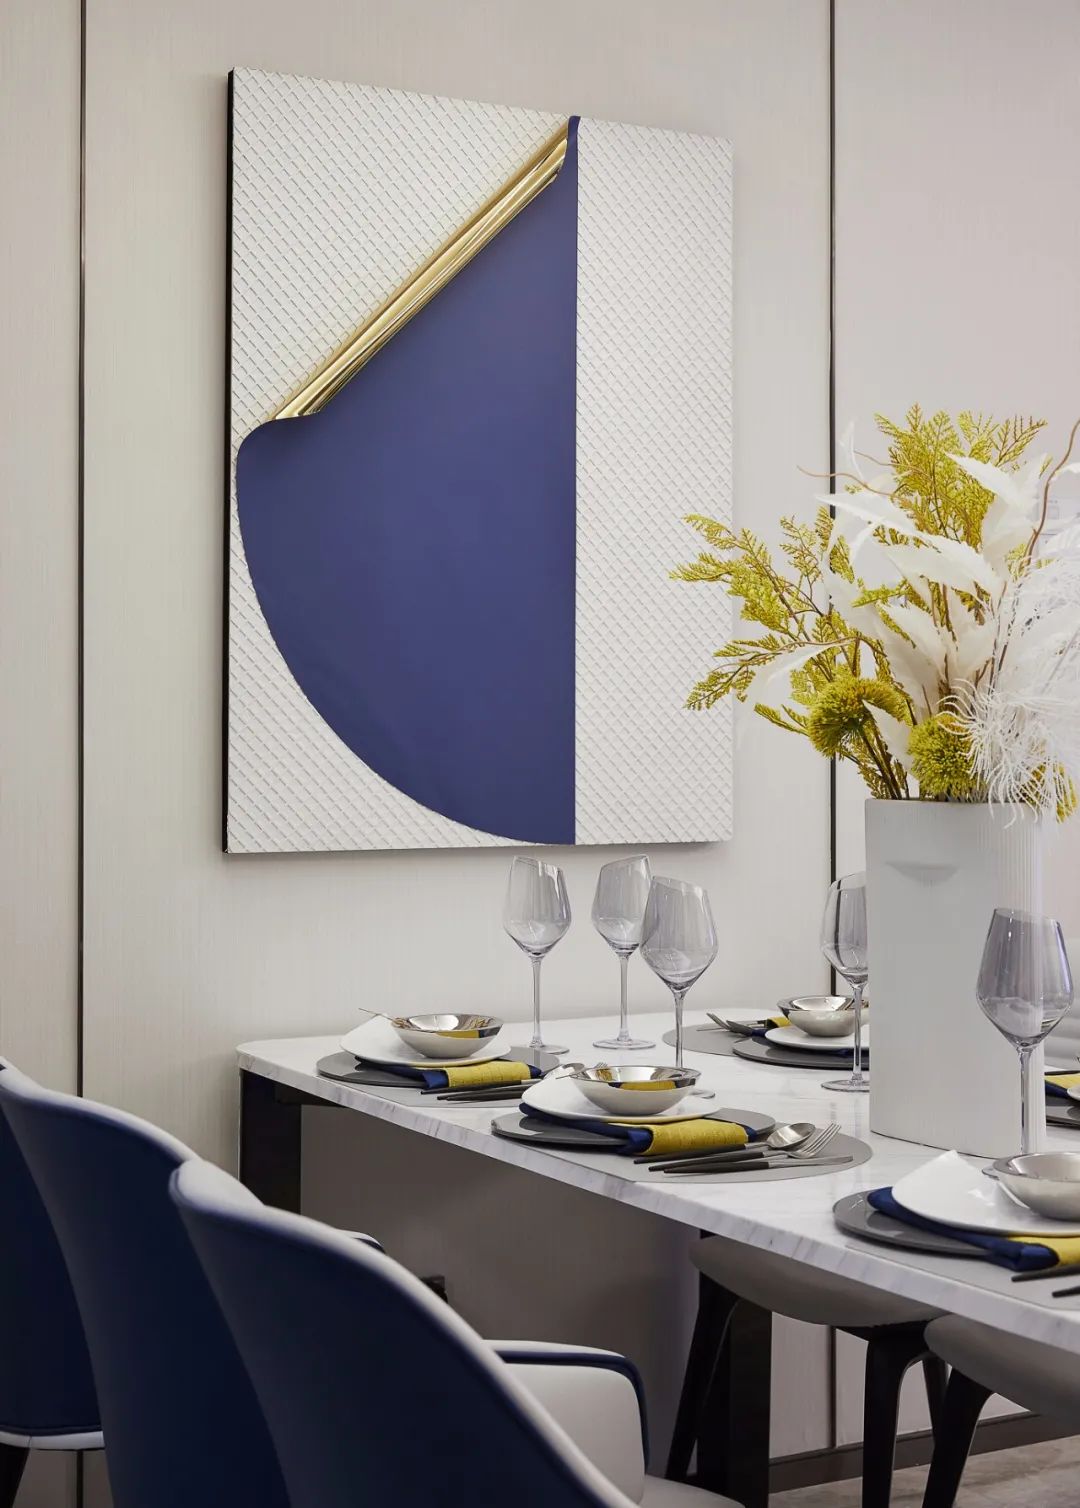 現代簡約風格室內設計家裝案例-餐廳餐具